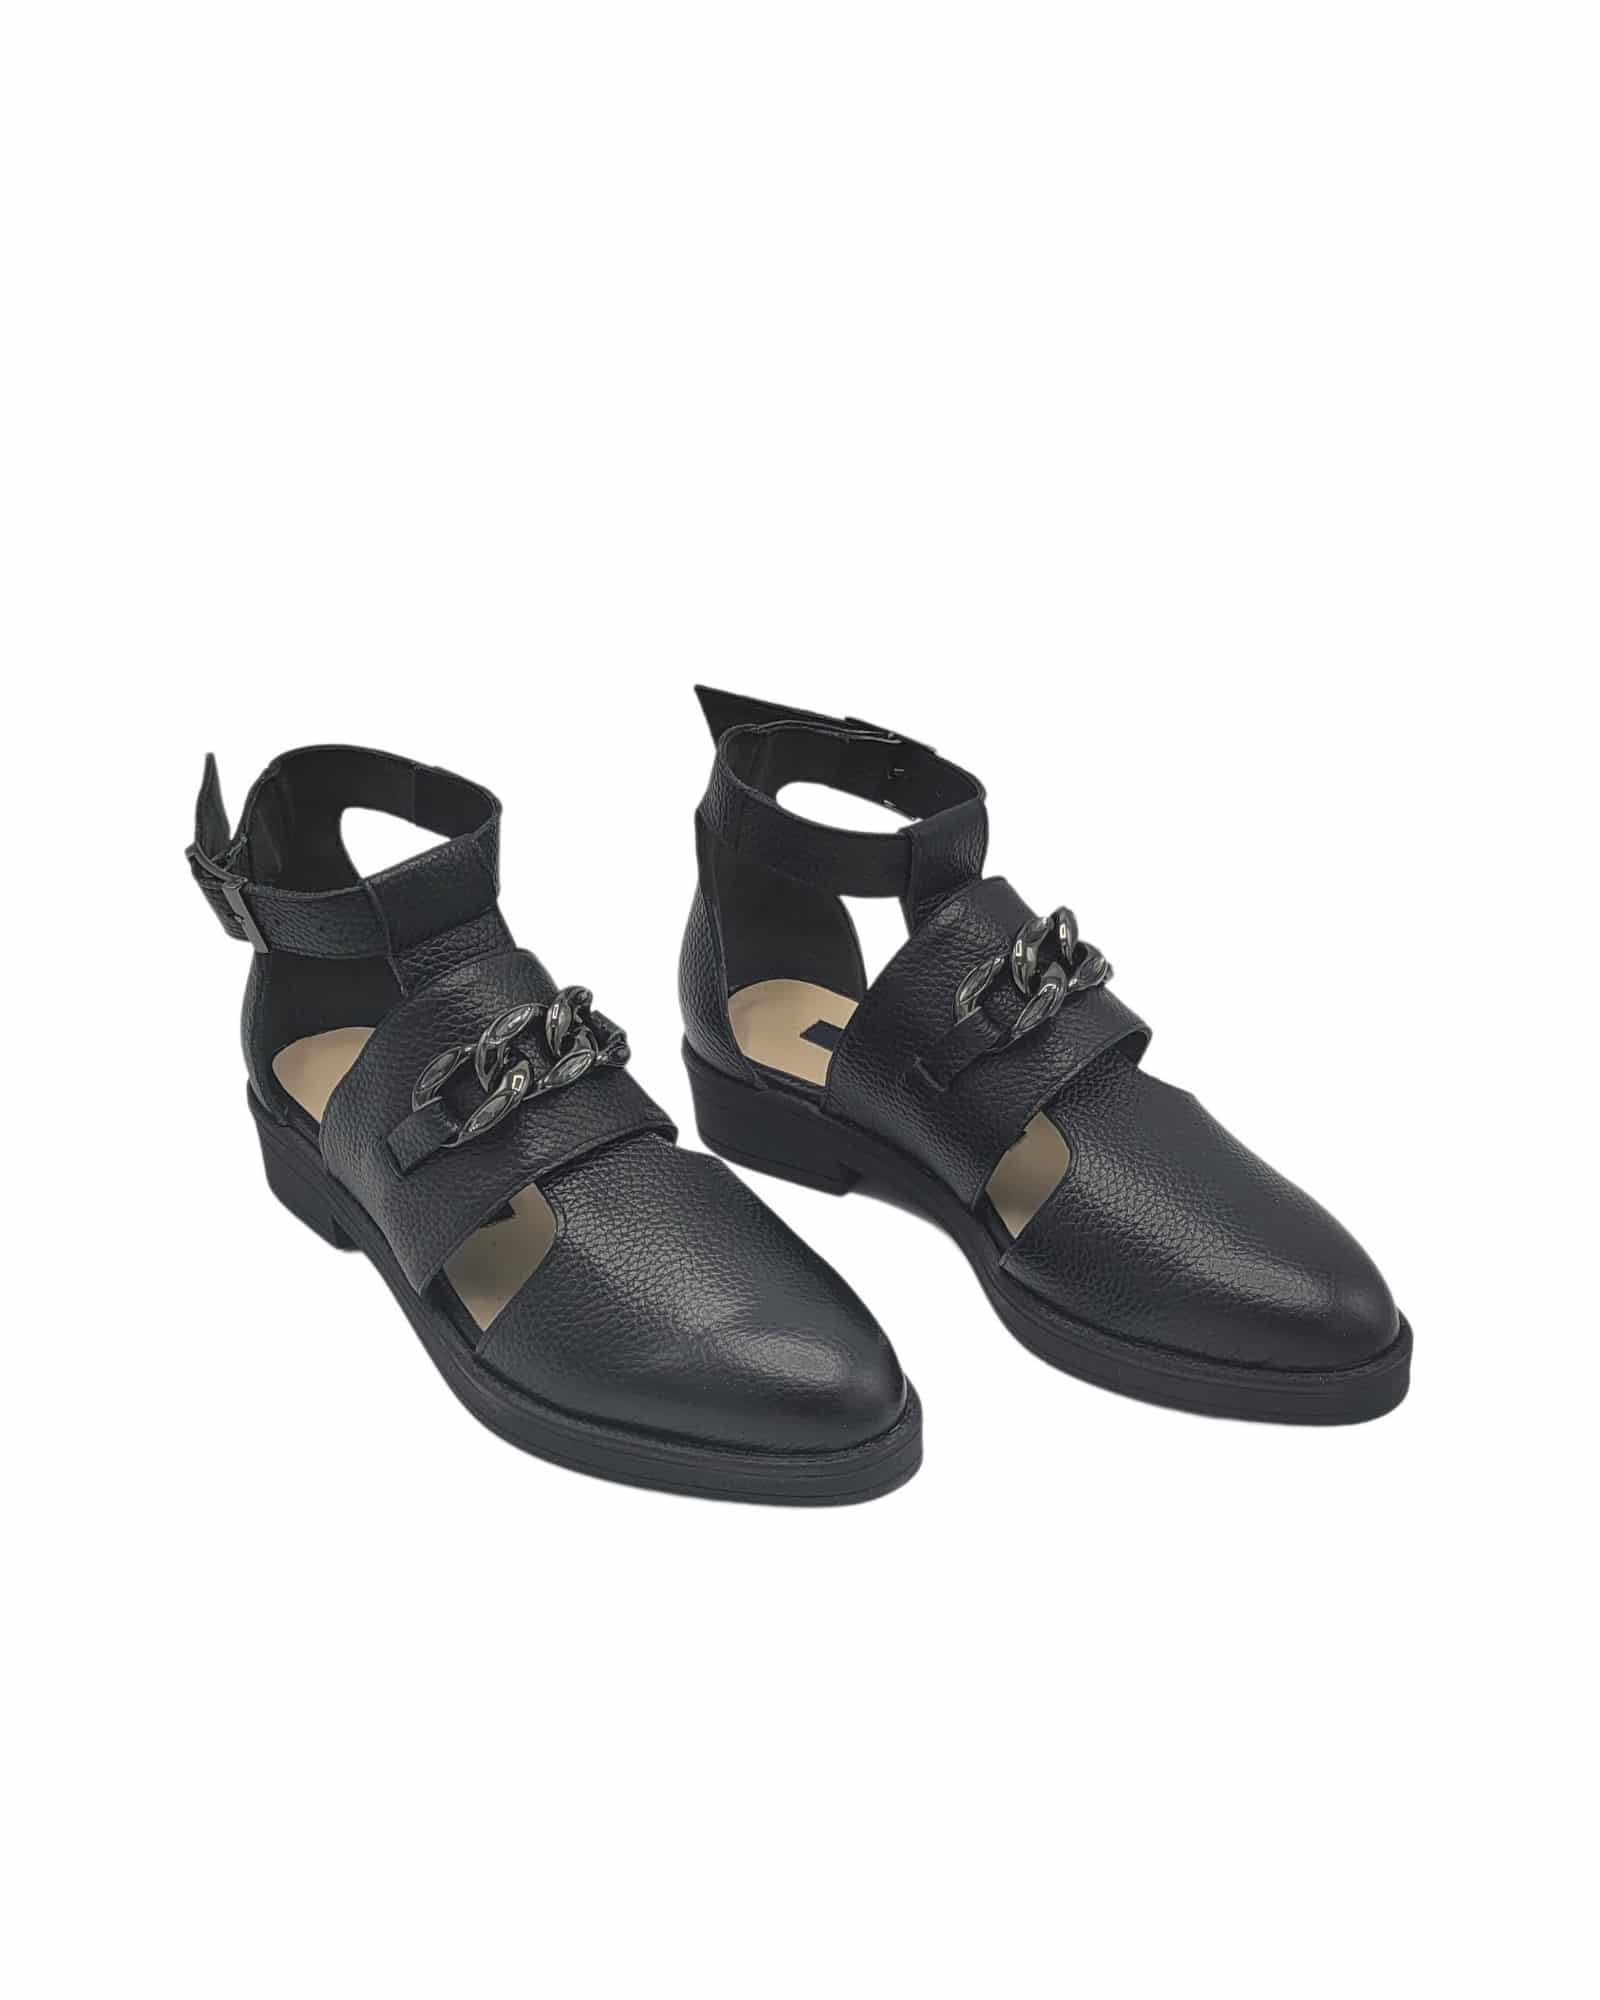 Pantofi trendy cu talpa joasa Ramina Black